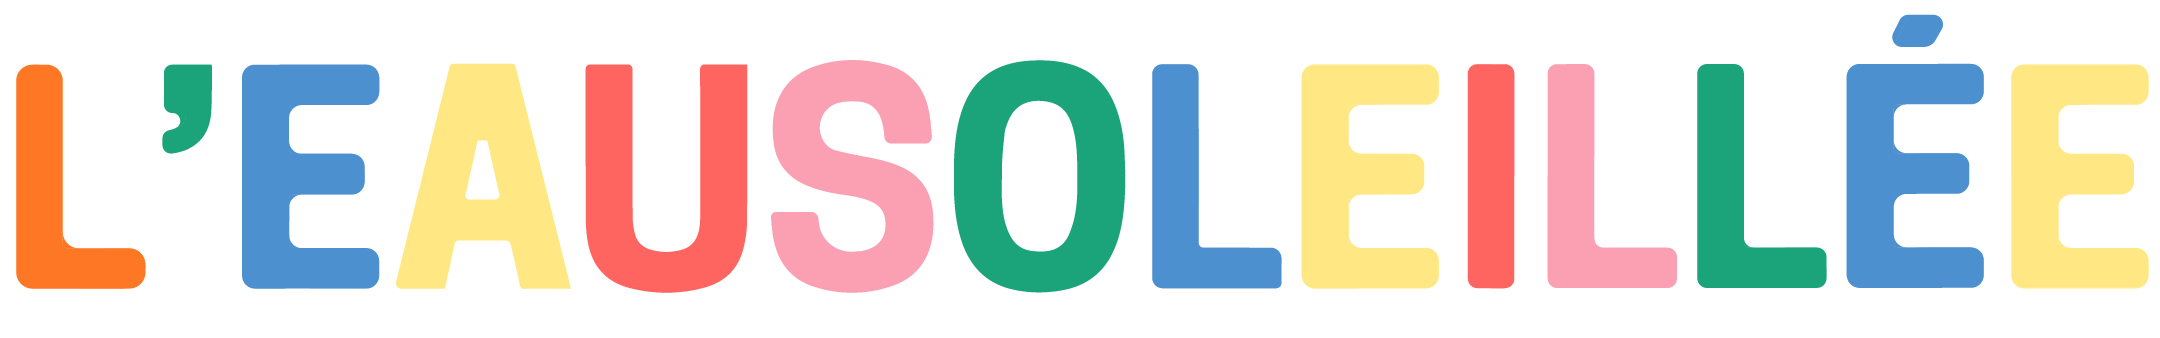 Logo-eausoleillee